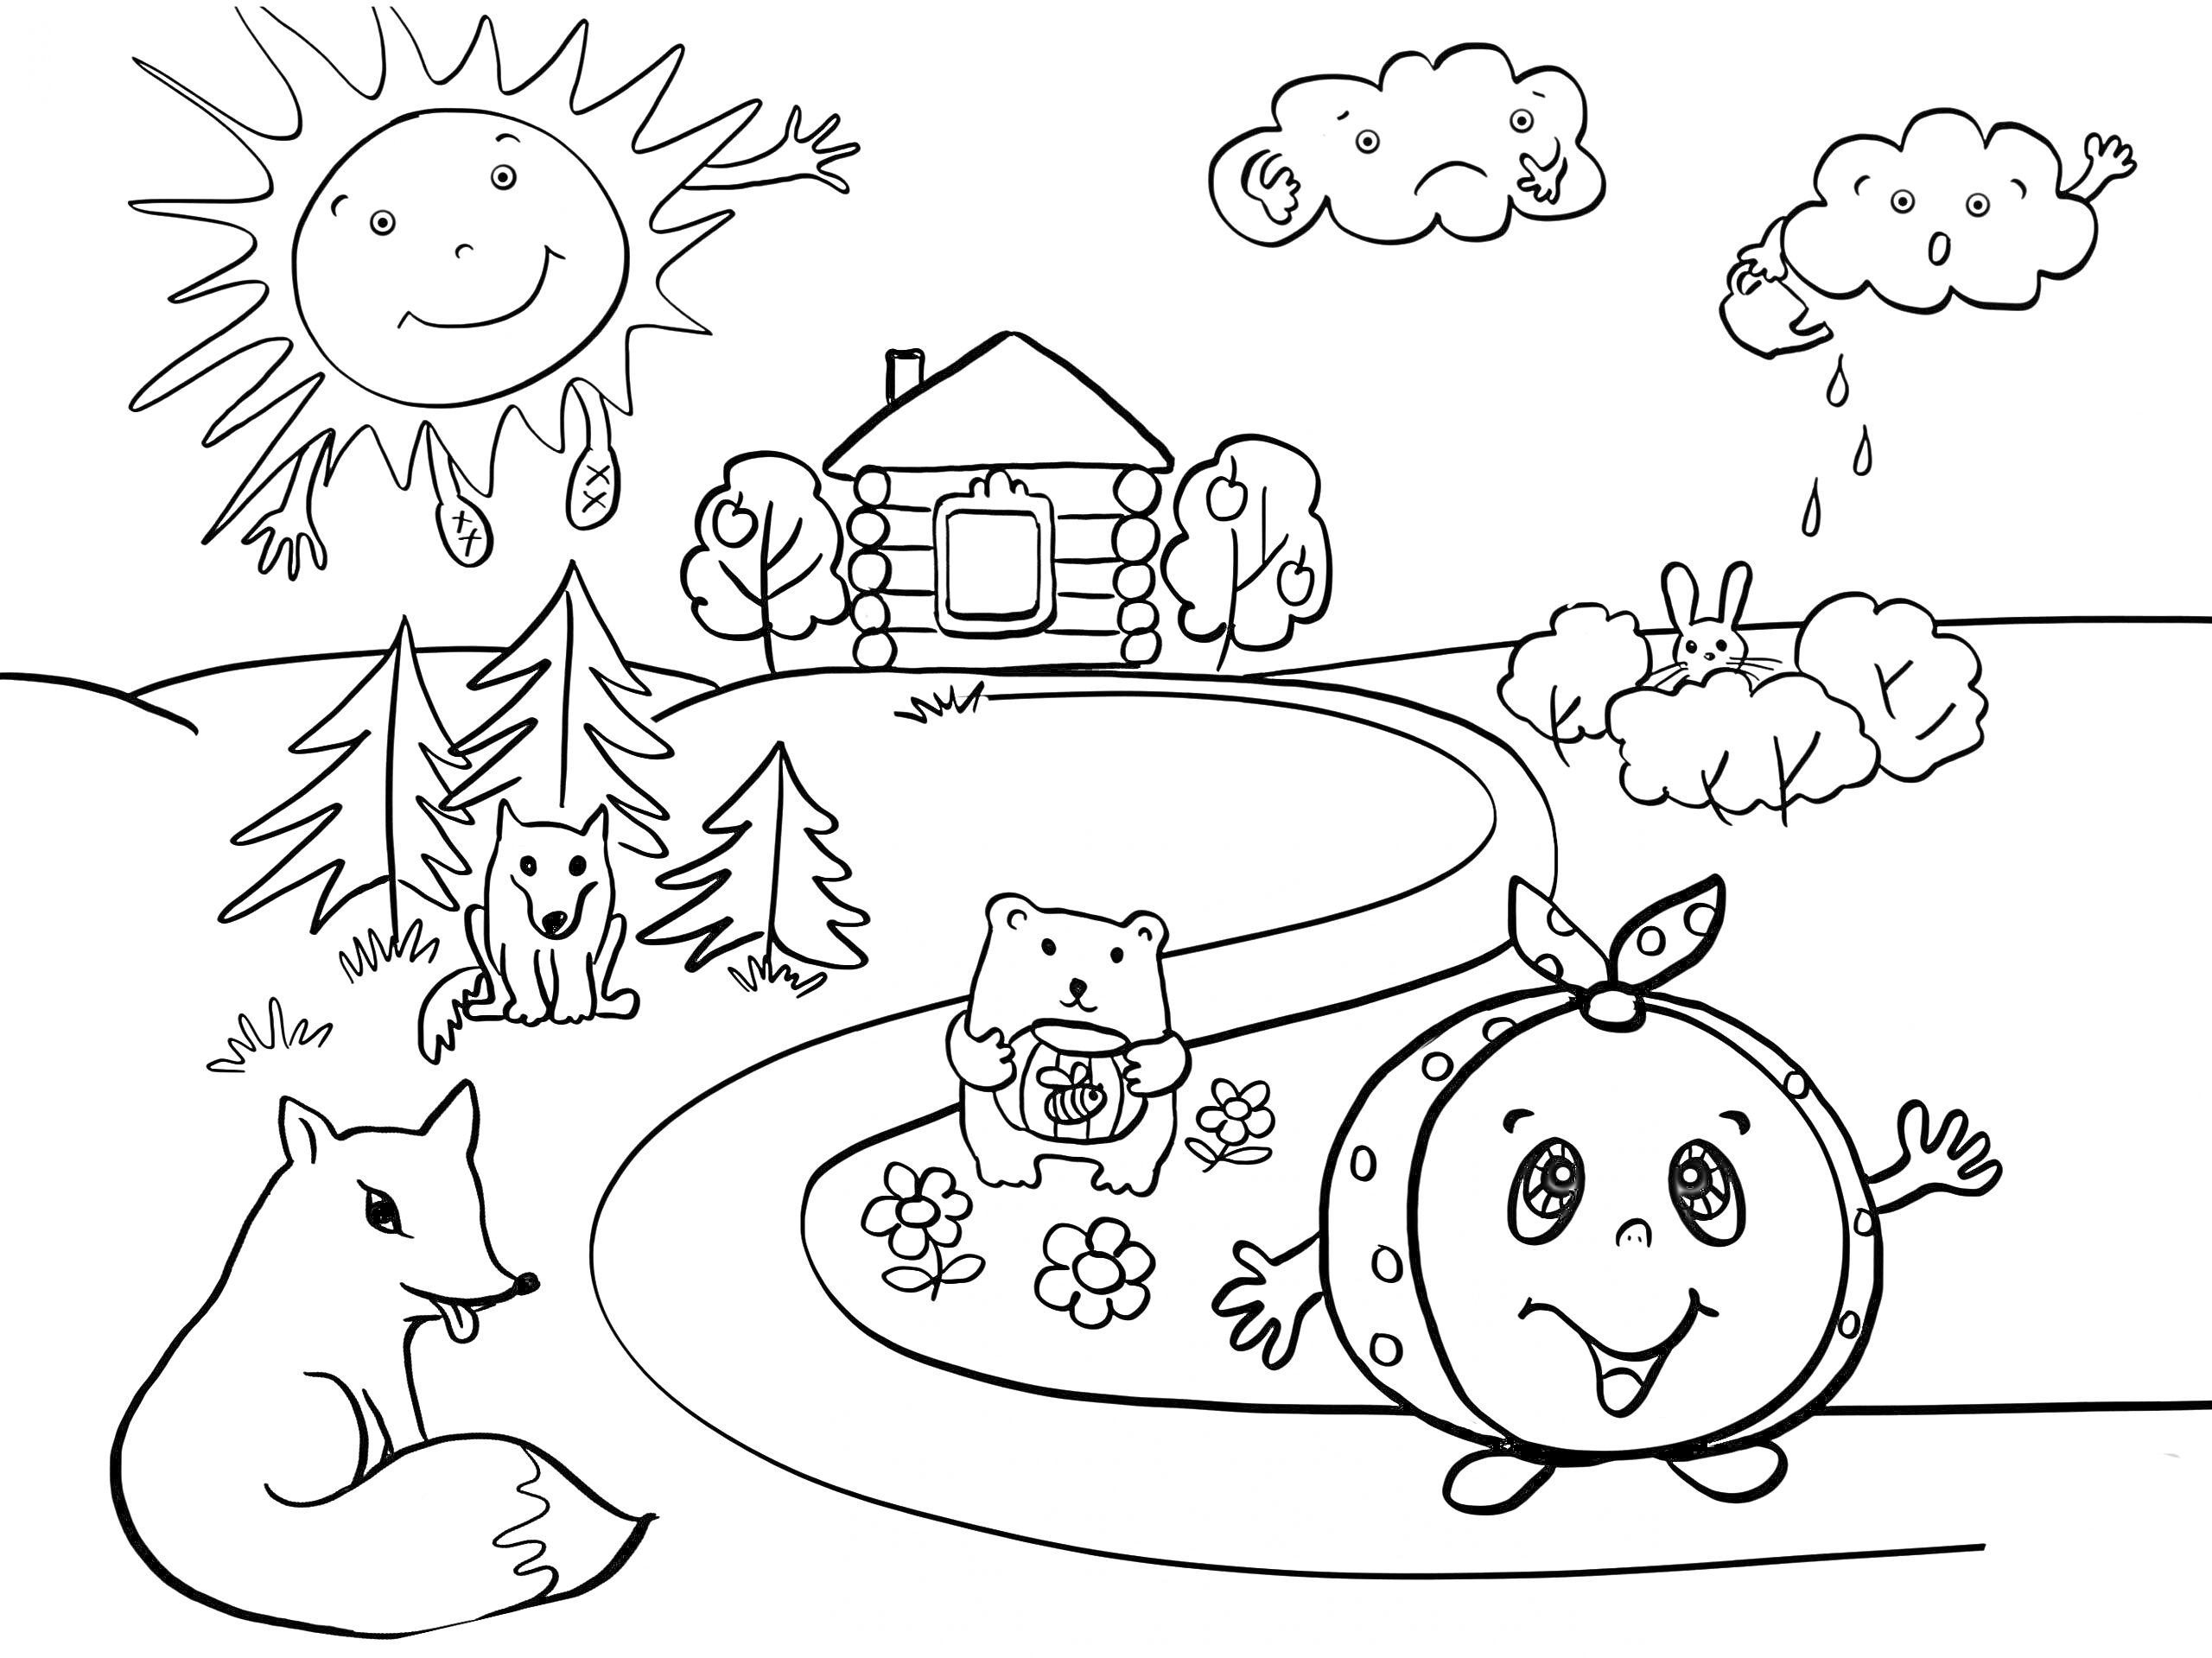 Раскраска Колобок на дорожке возле домика, медведь, лиса, солнце, облака и заяц в лесу